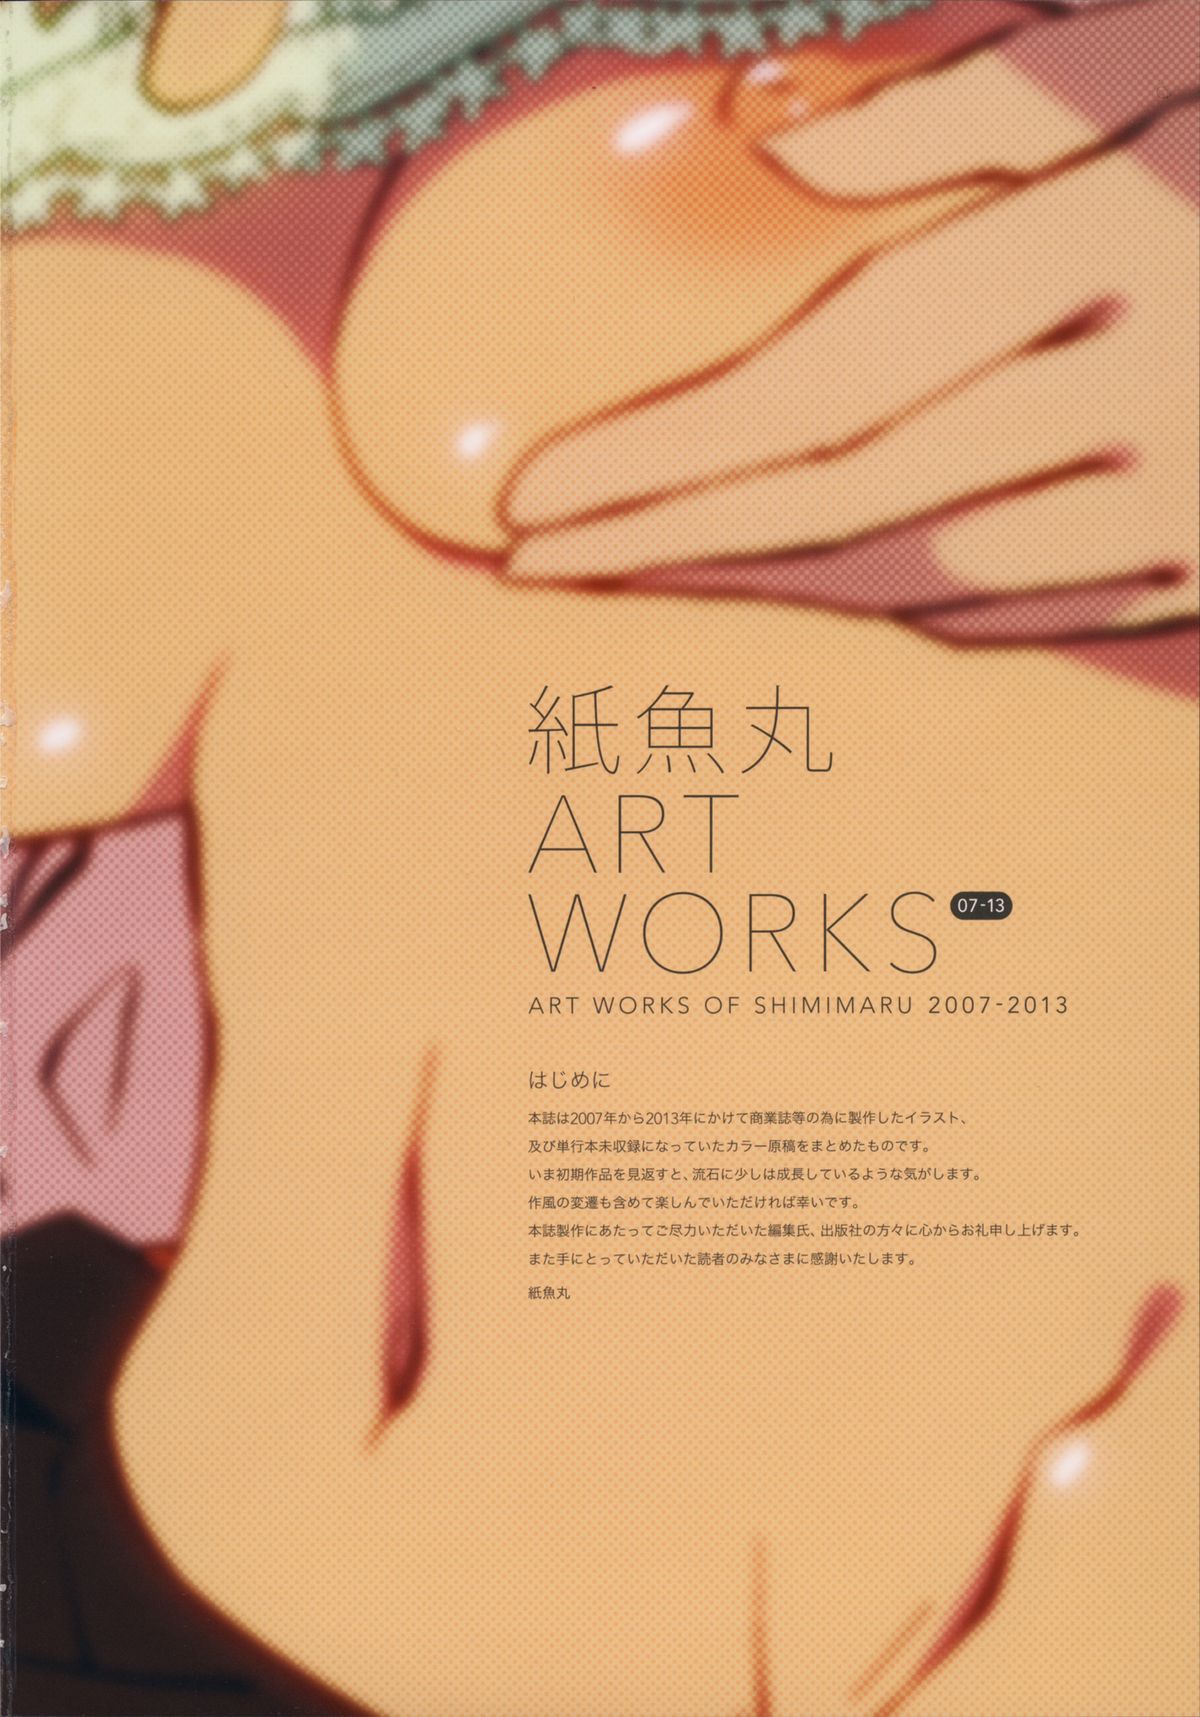 [JUNKLAND2 (紙魚丸)] 紙魚丸 ART WORKS